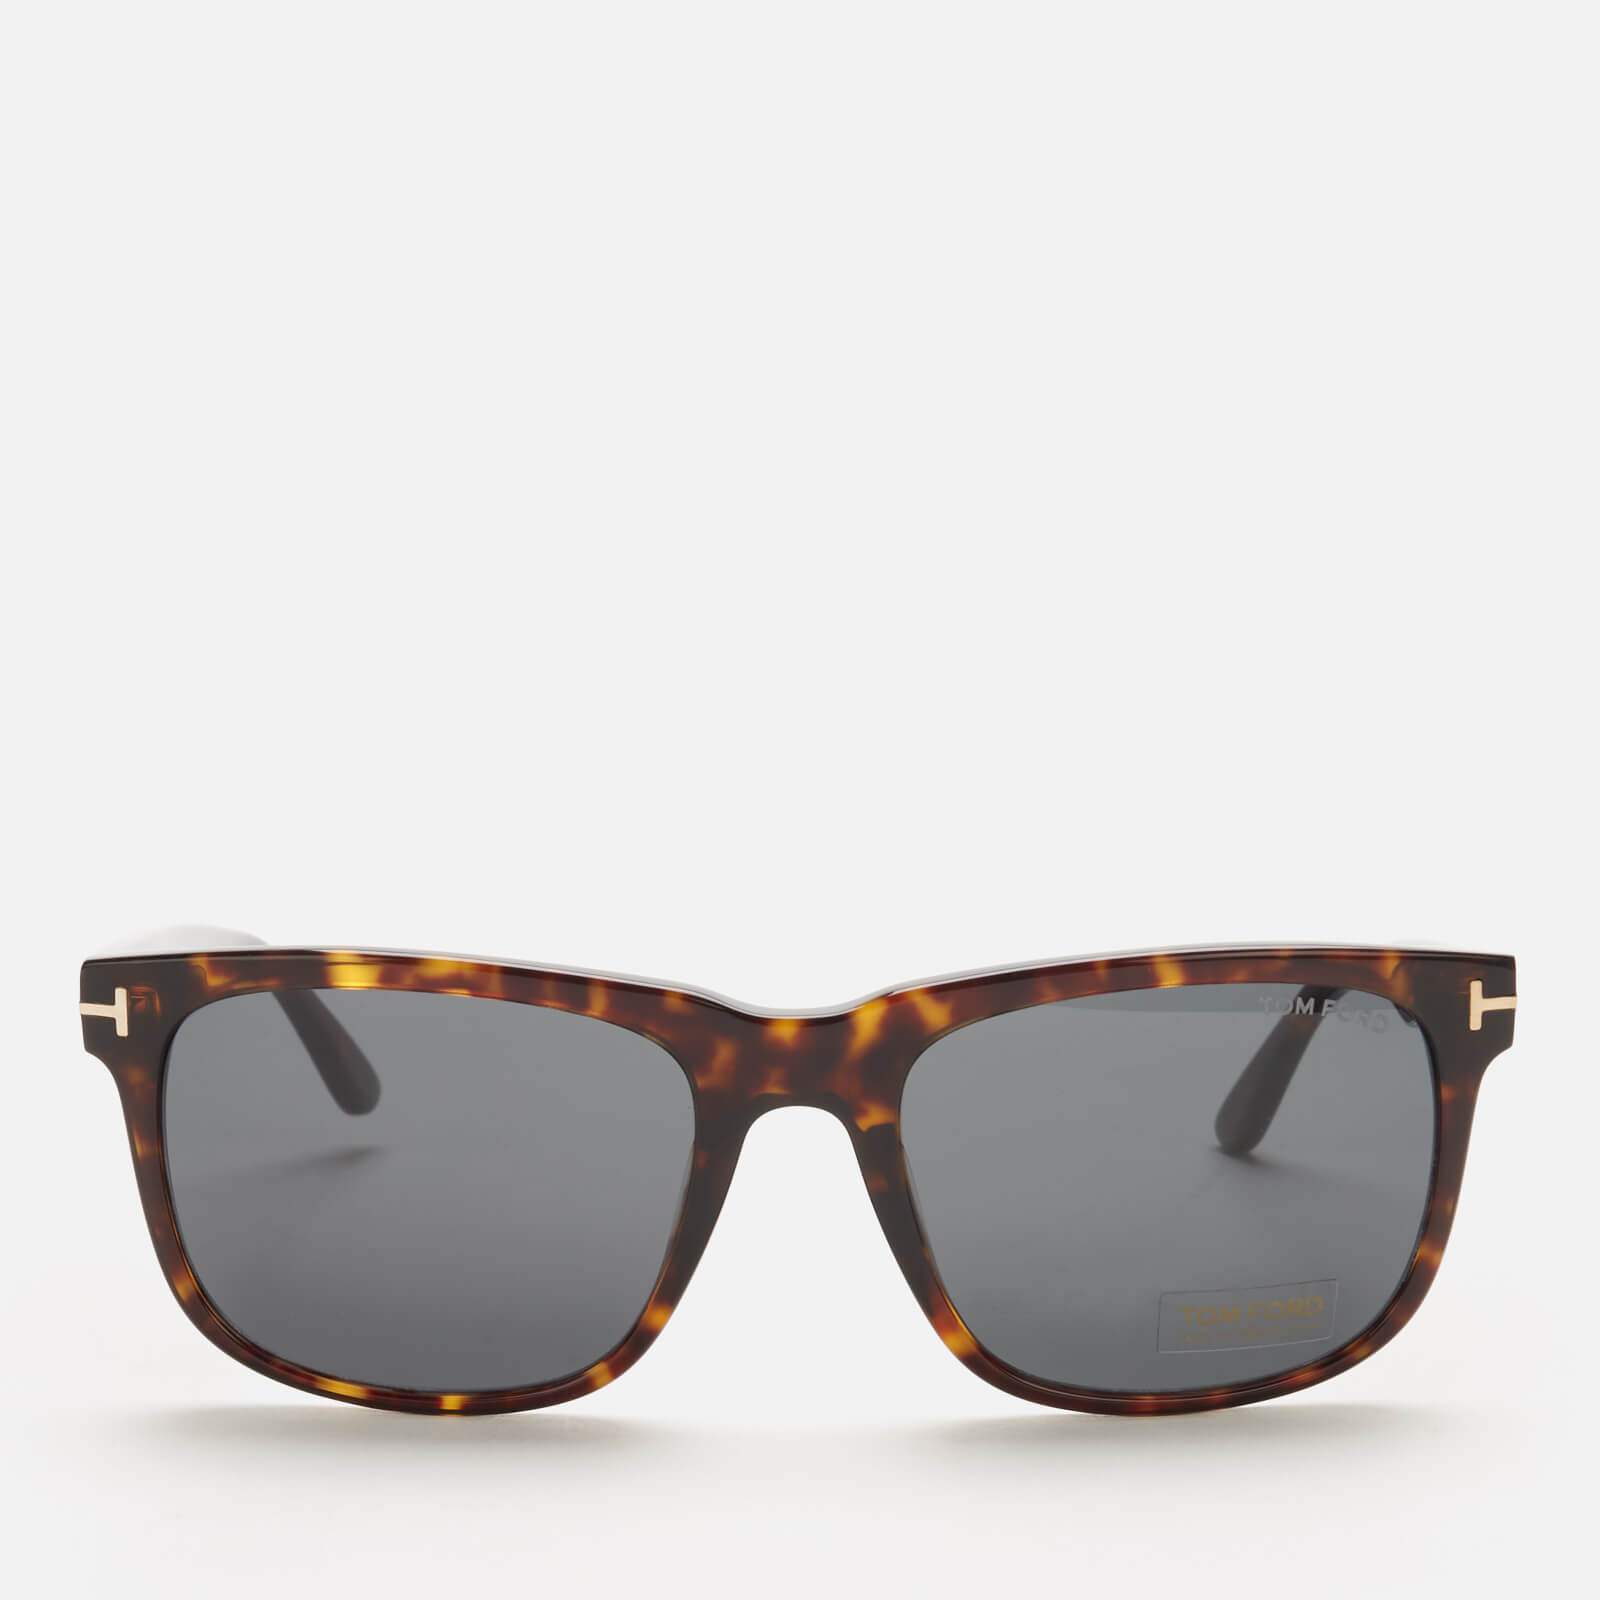 Tom Ford Men's Stephenson Sunglasses - Havana Brown